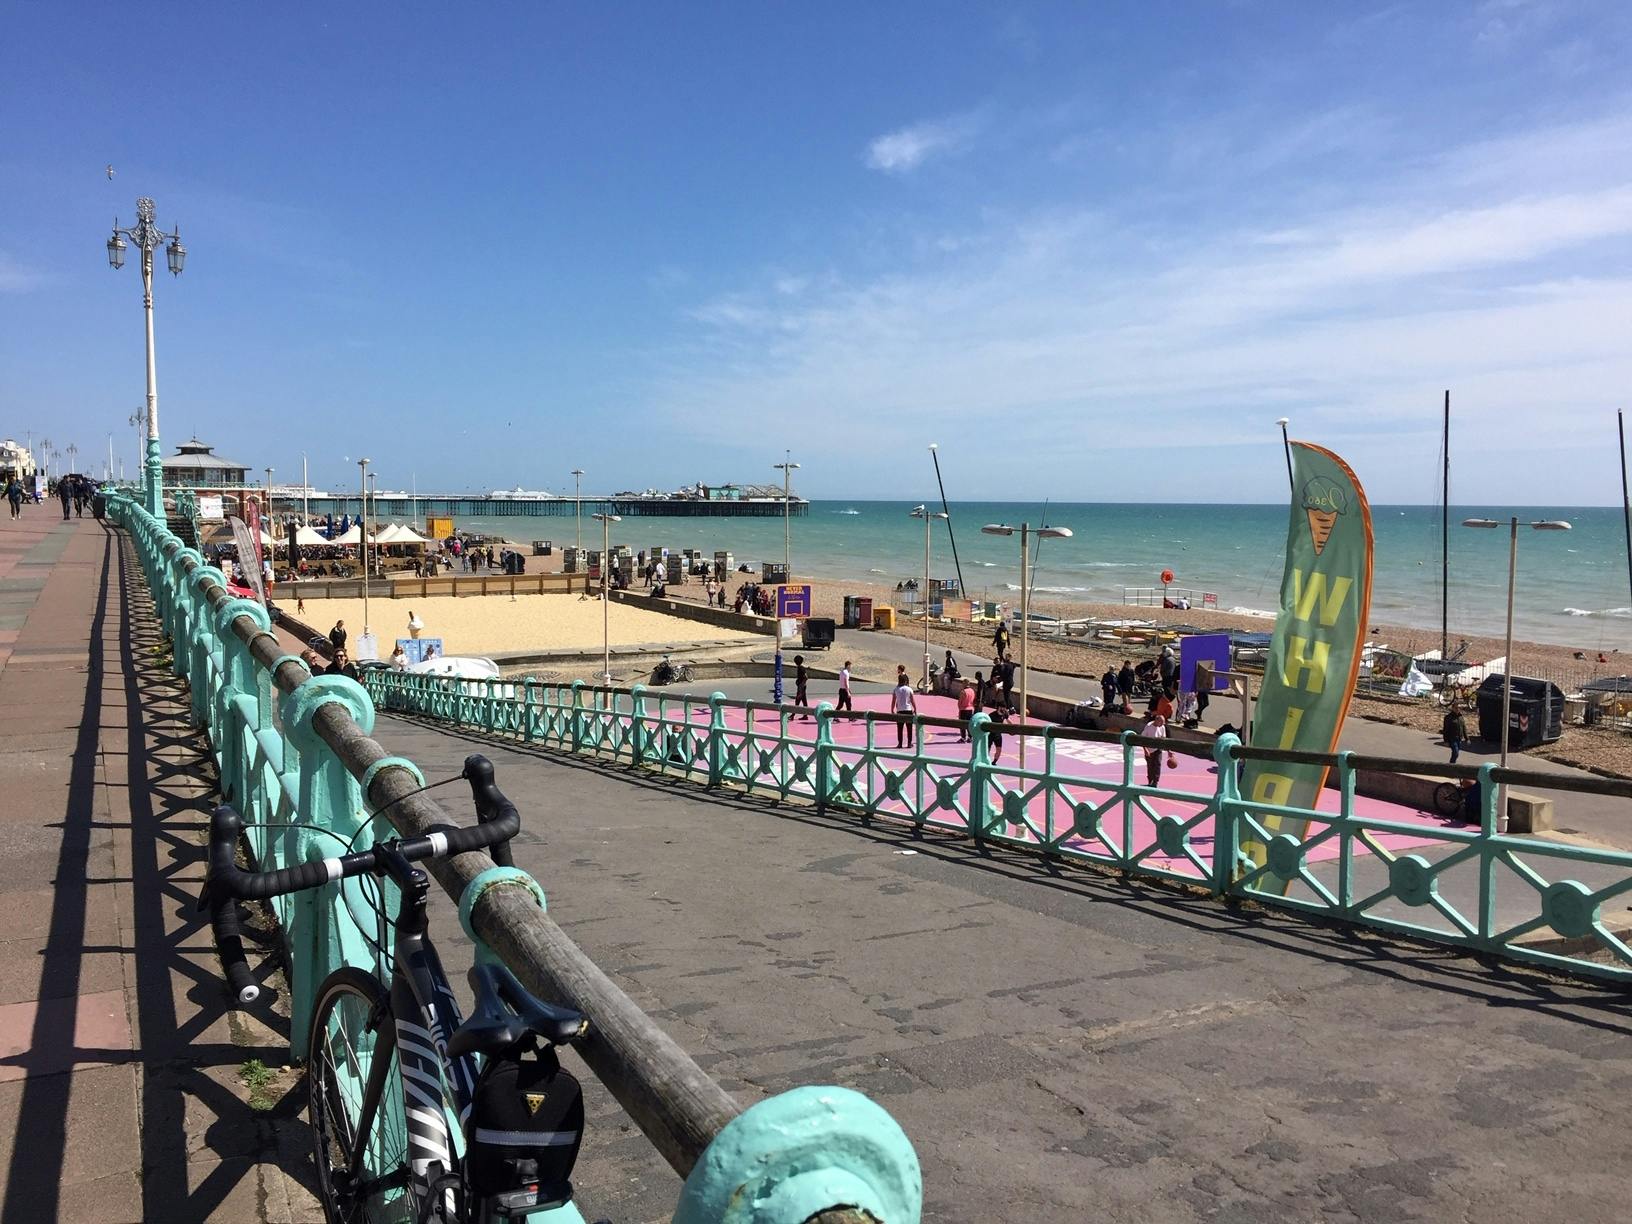 Bezoek de hoogtepunten van Brighton met een mobiele app voor een verkenningsspel